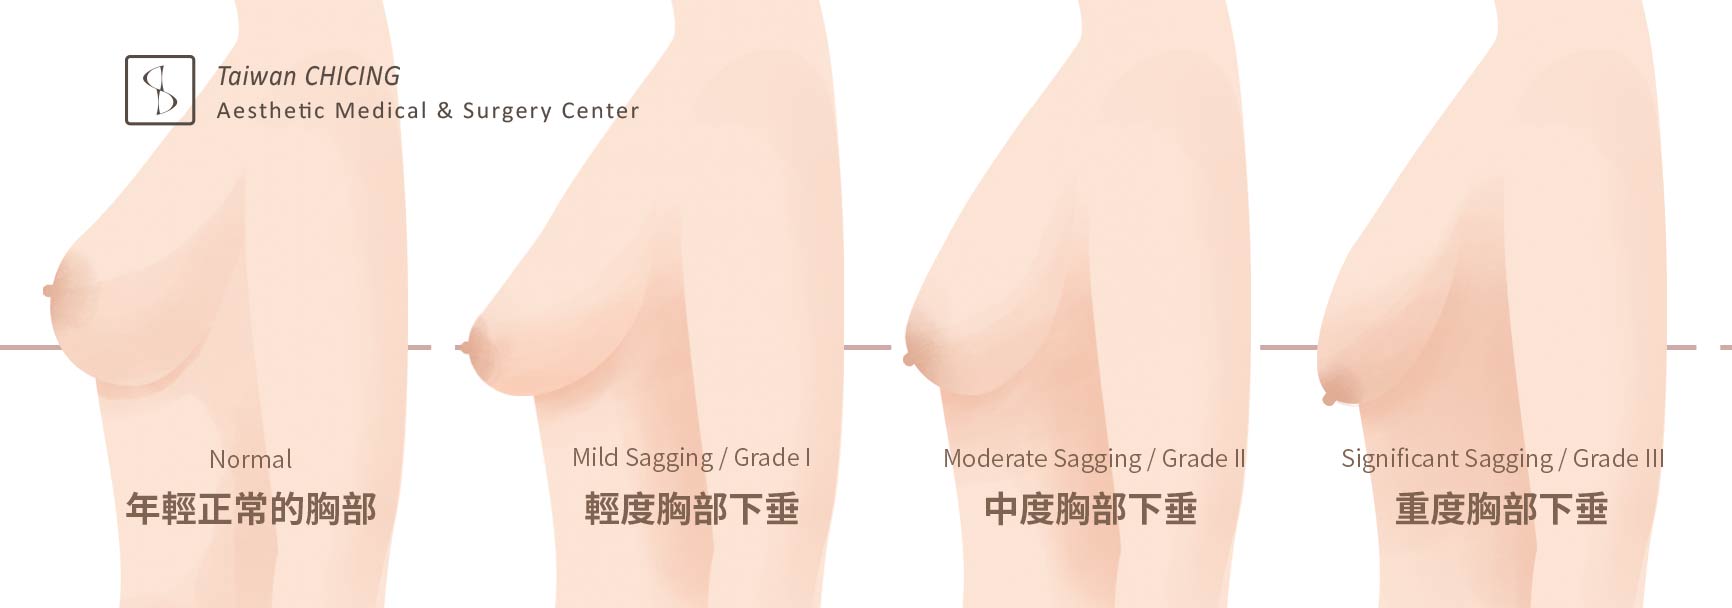 胸部下垂_二次隆乳_提乳手術_謝禎祥醫師